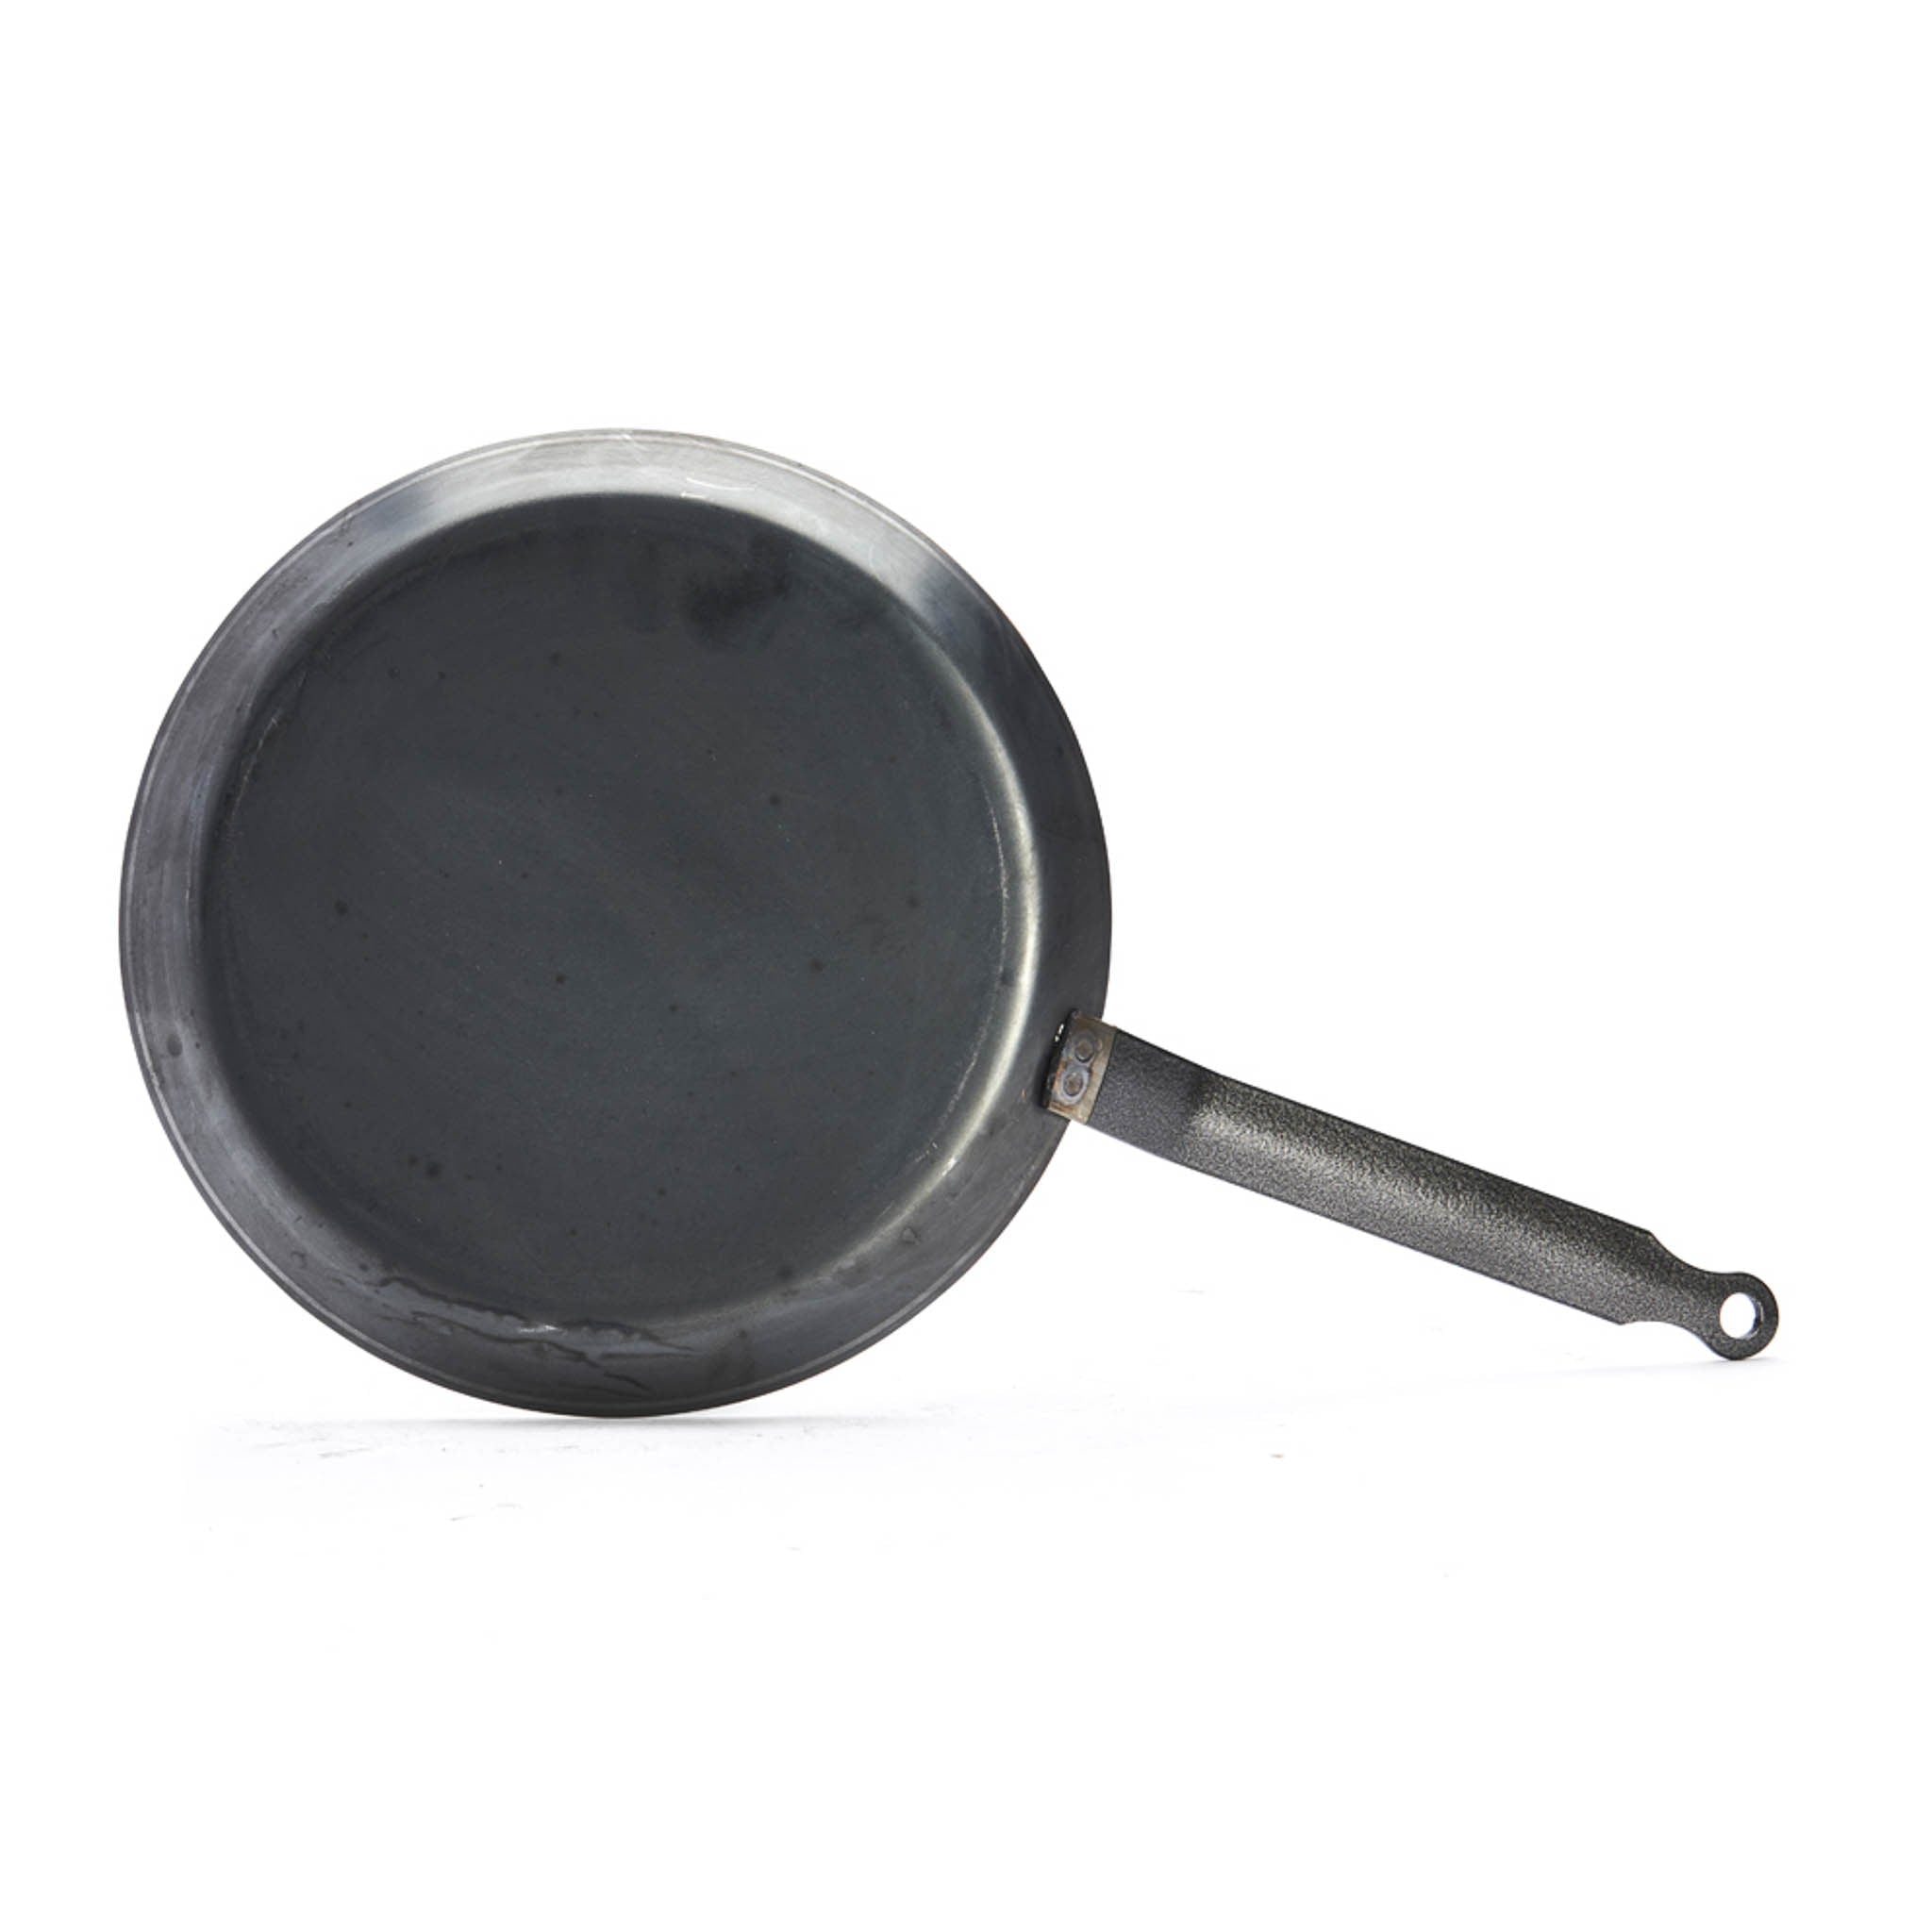 De Buyer Blue Steel Crepe Pan, 24cm